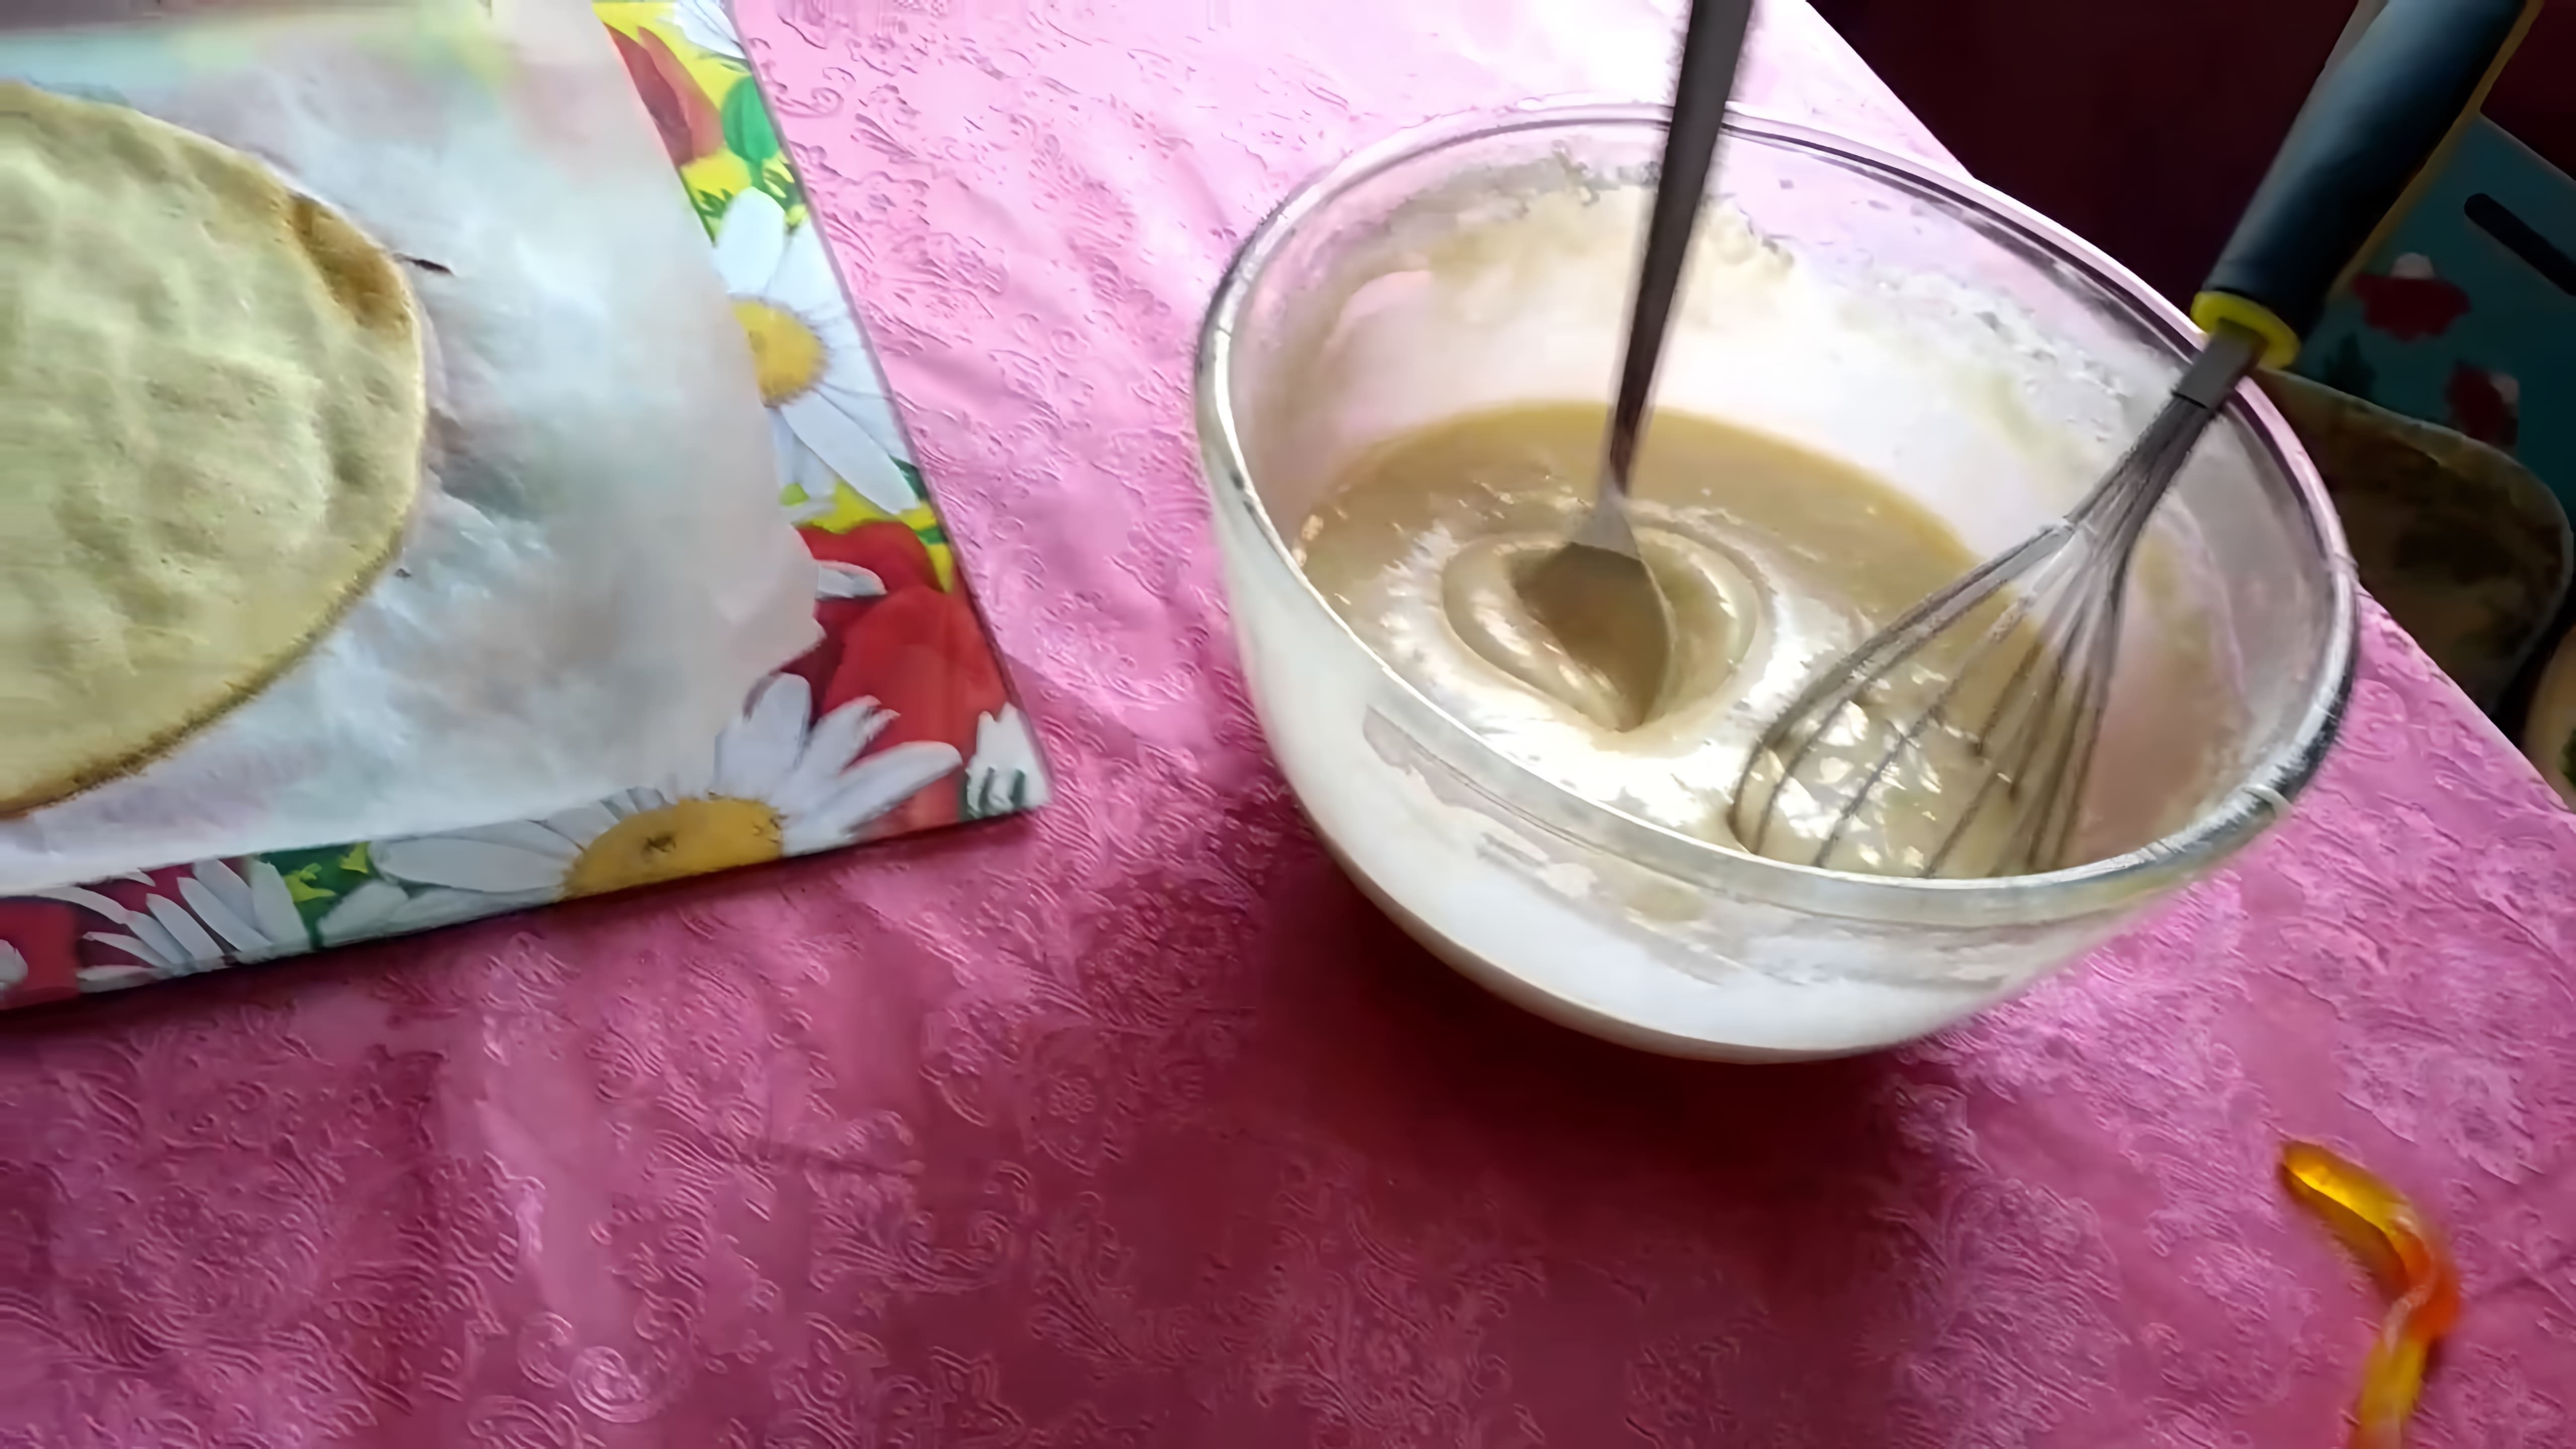 В этом видео демонстрируется процесс приготовления торта "Молочная девочка" без использования сгущенки